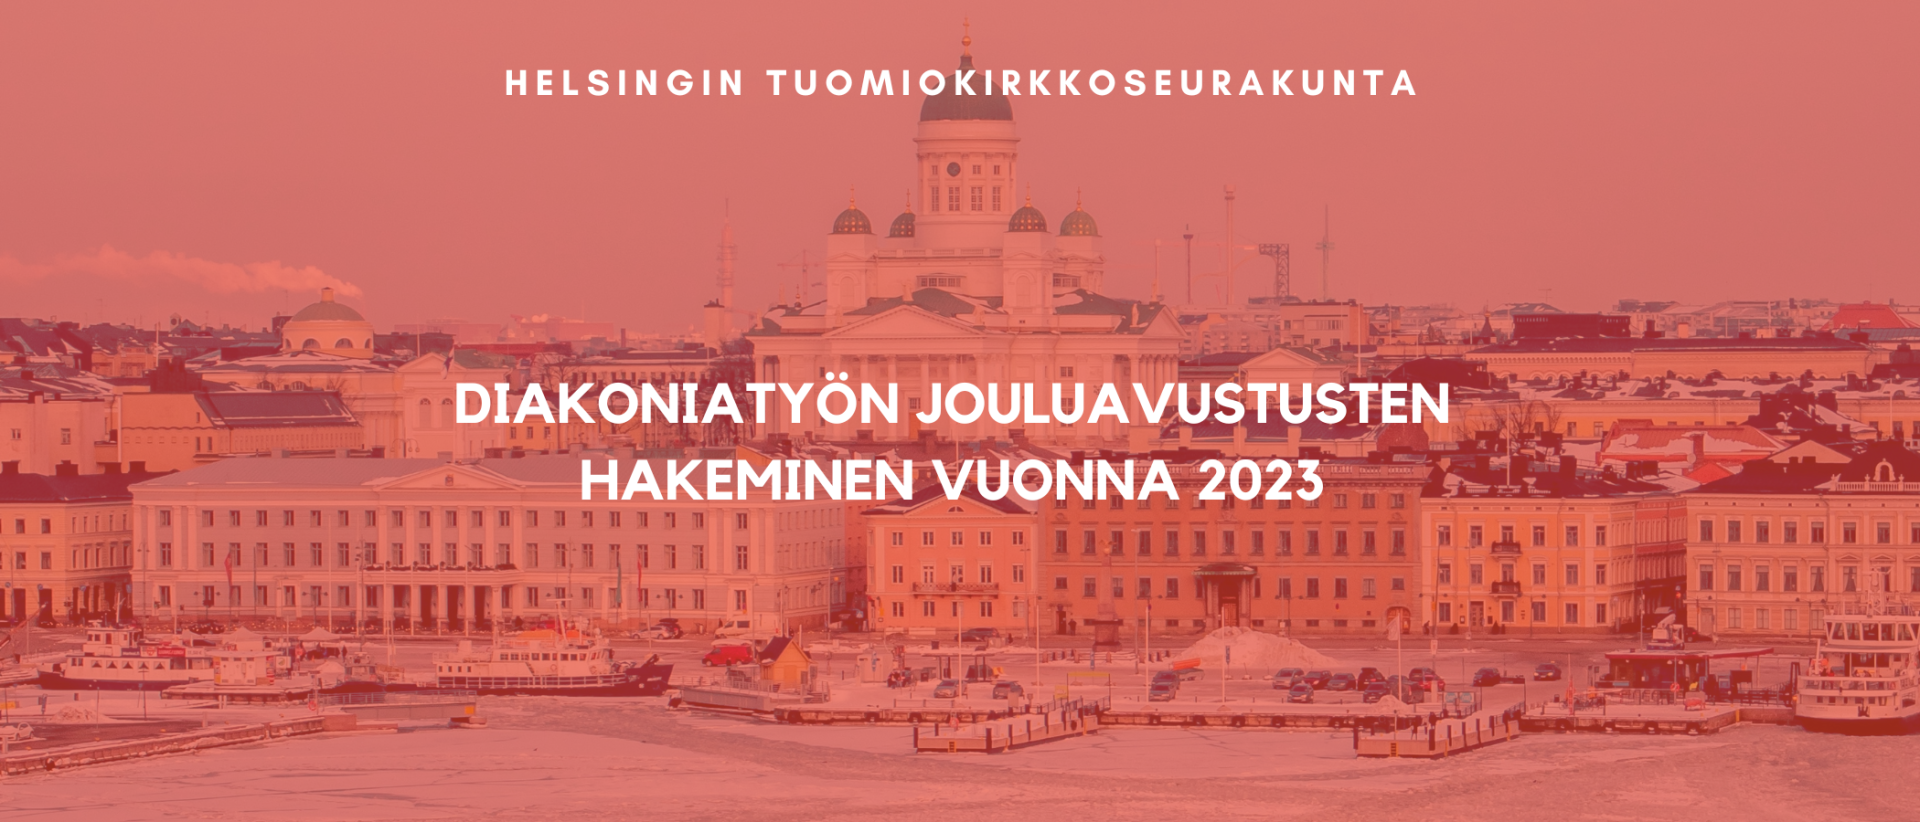 Helsingin tuomiokirkkoseurakunnan diakoniatyön jouluavustusten hakeminen vuonna 2023